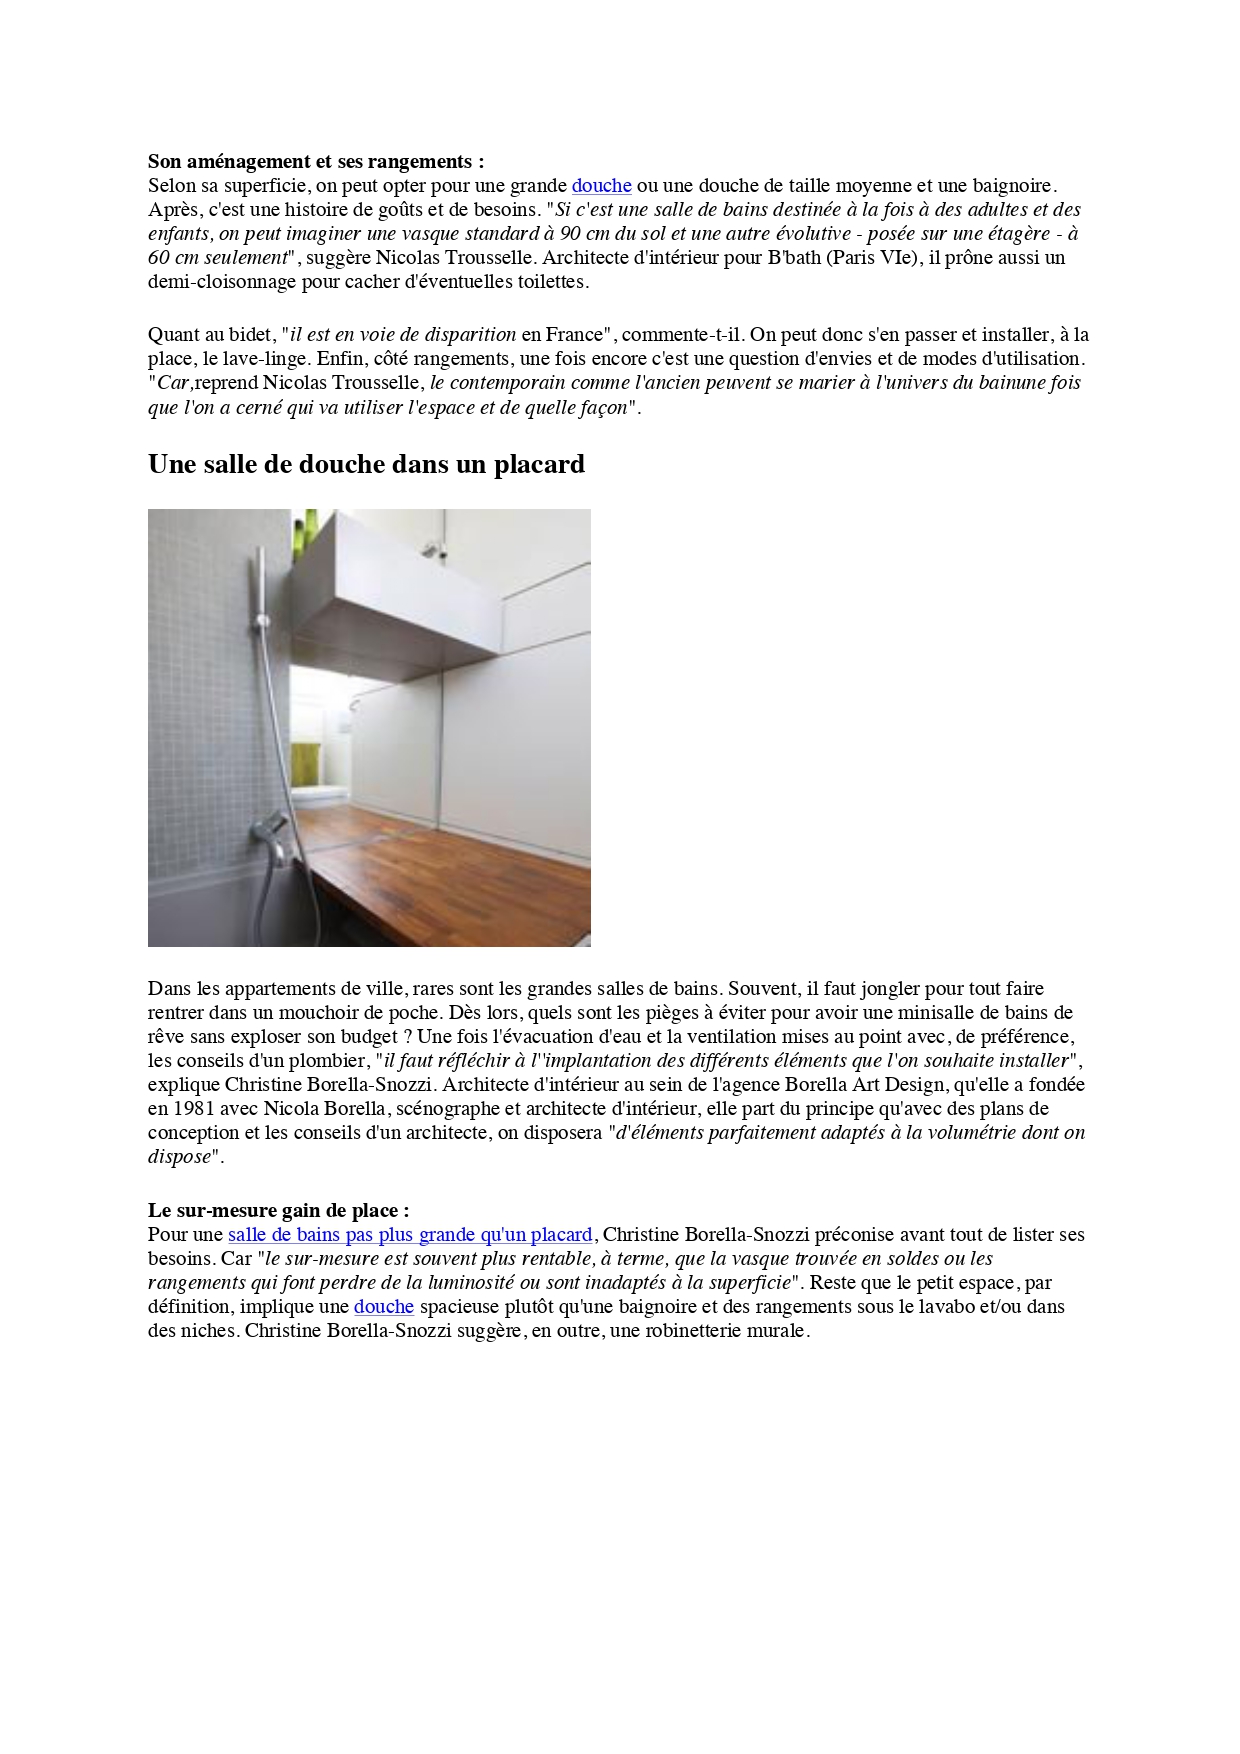 nicolas-trousselle-secretsdintérieurs-architectedintérieur-villa-cote maison (3)